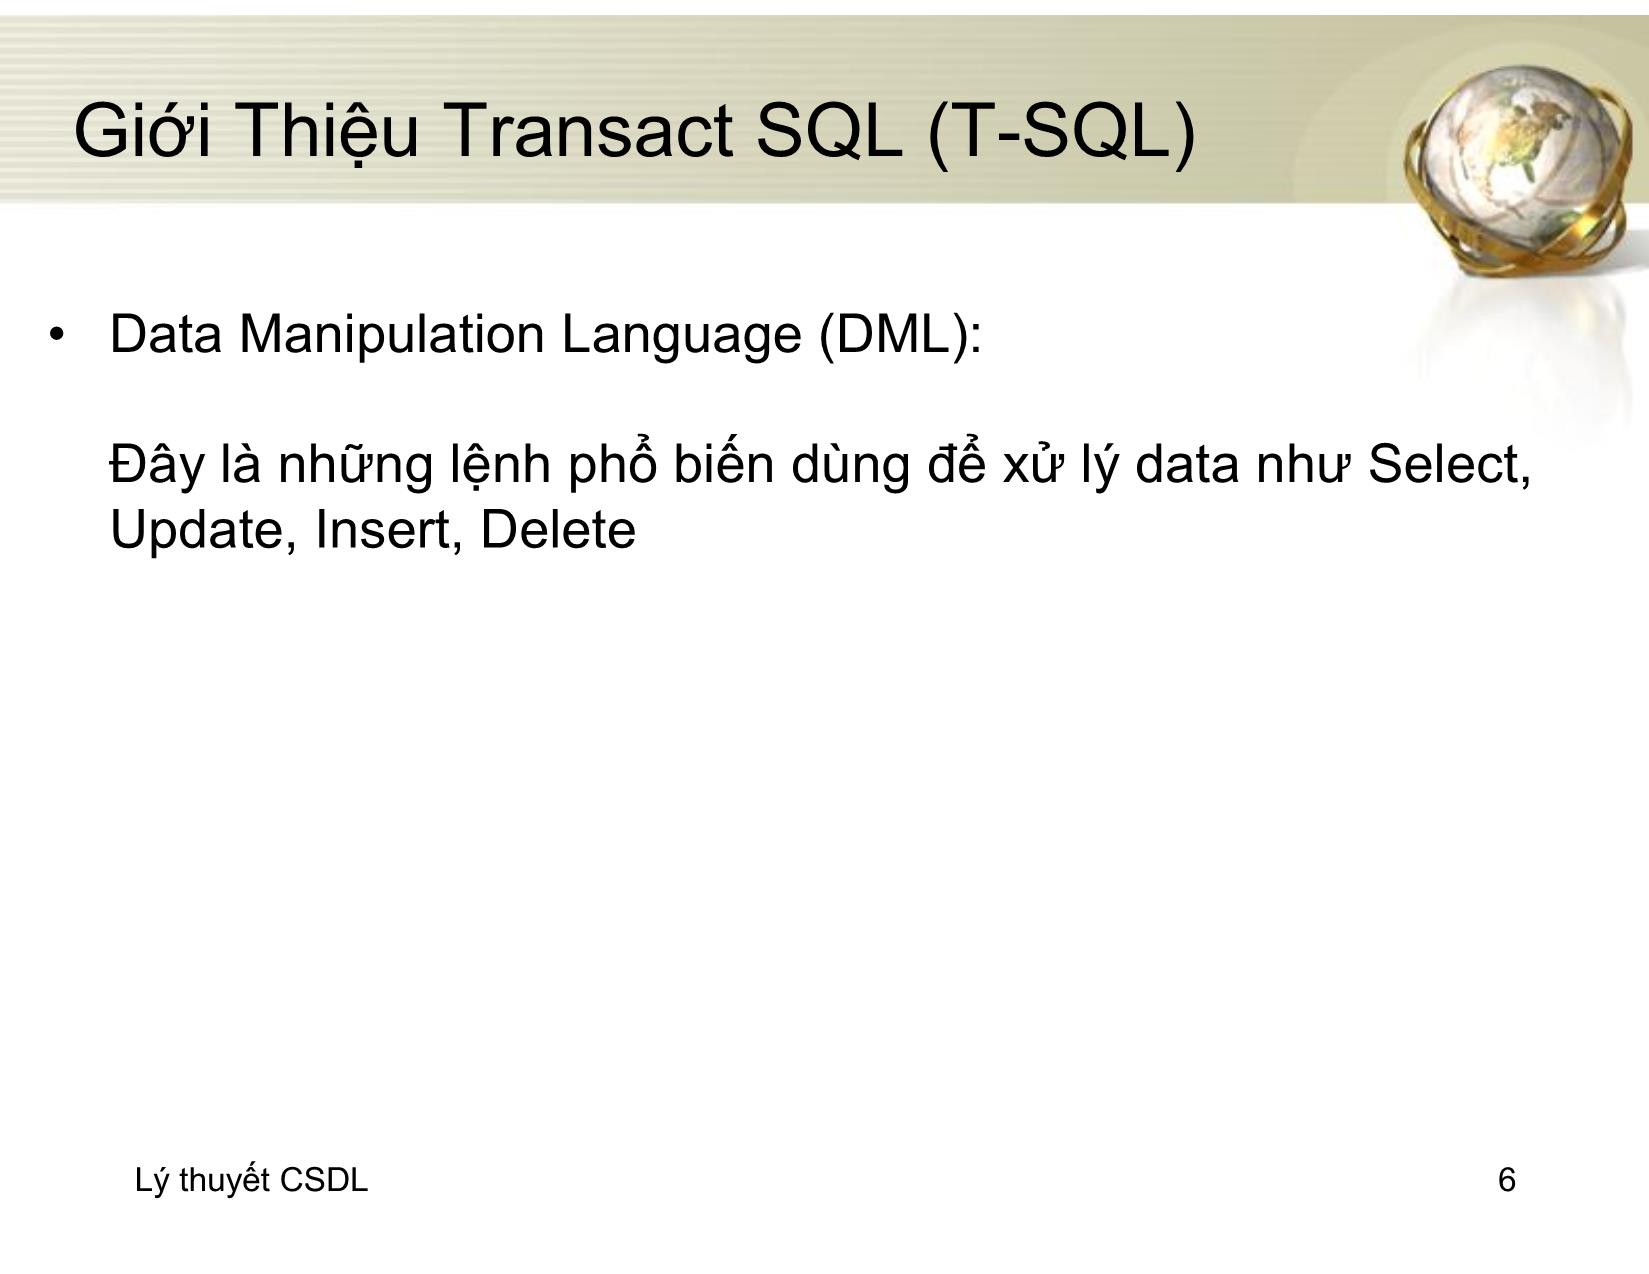 Bài giảng Cơ sở dữ liệu - Chương 7: Ngôn ngữ T-SQL - Đỗ Thị Mai Hường trang 6